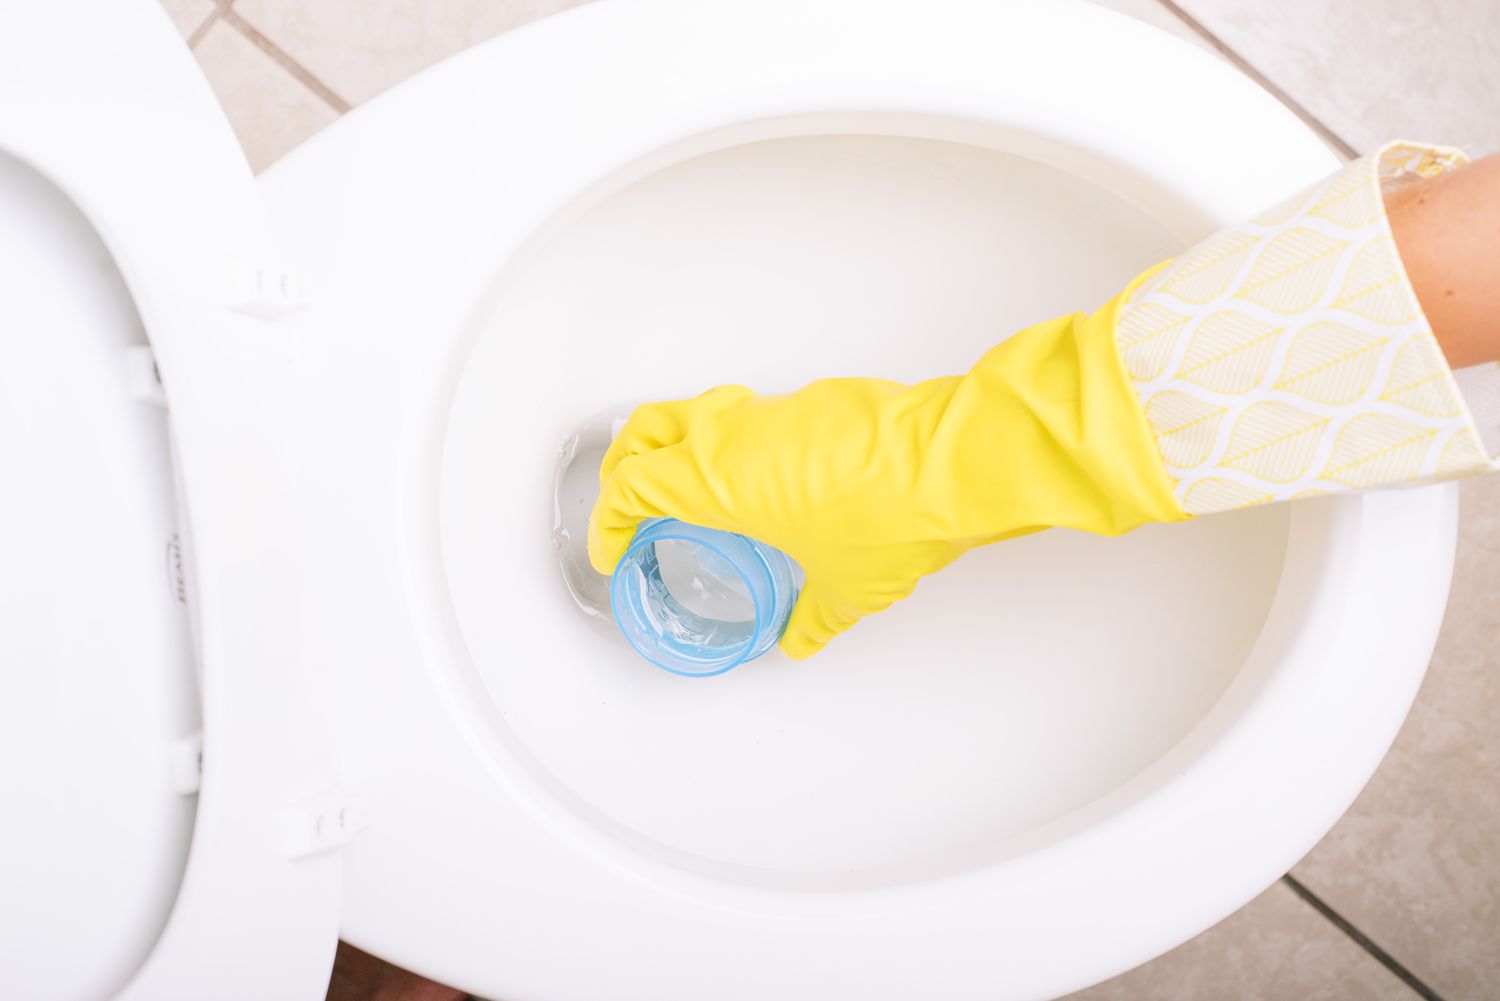 Vaso sanitário de cerâmica branca retirando água com tampa de garrafa de roupa suja e luvas amarelas